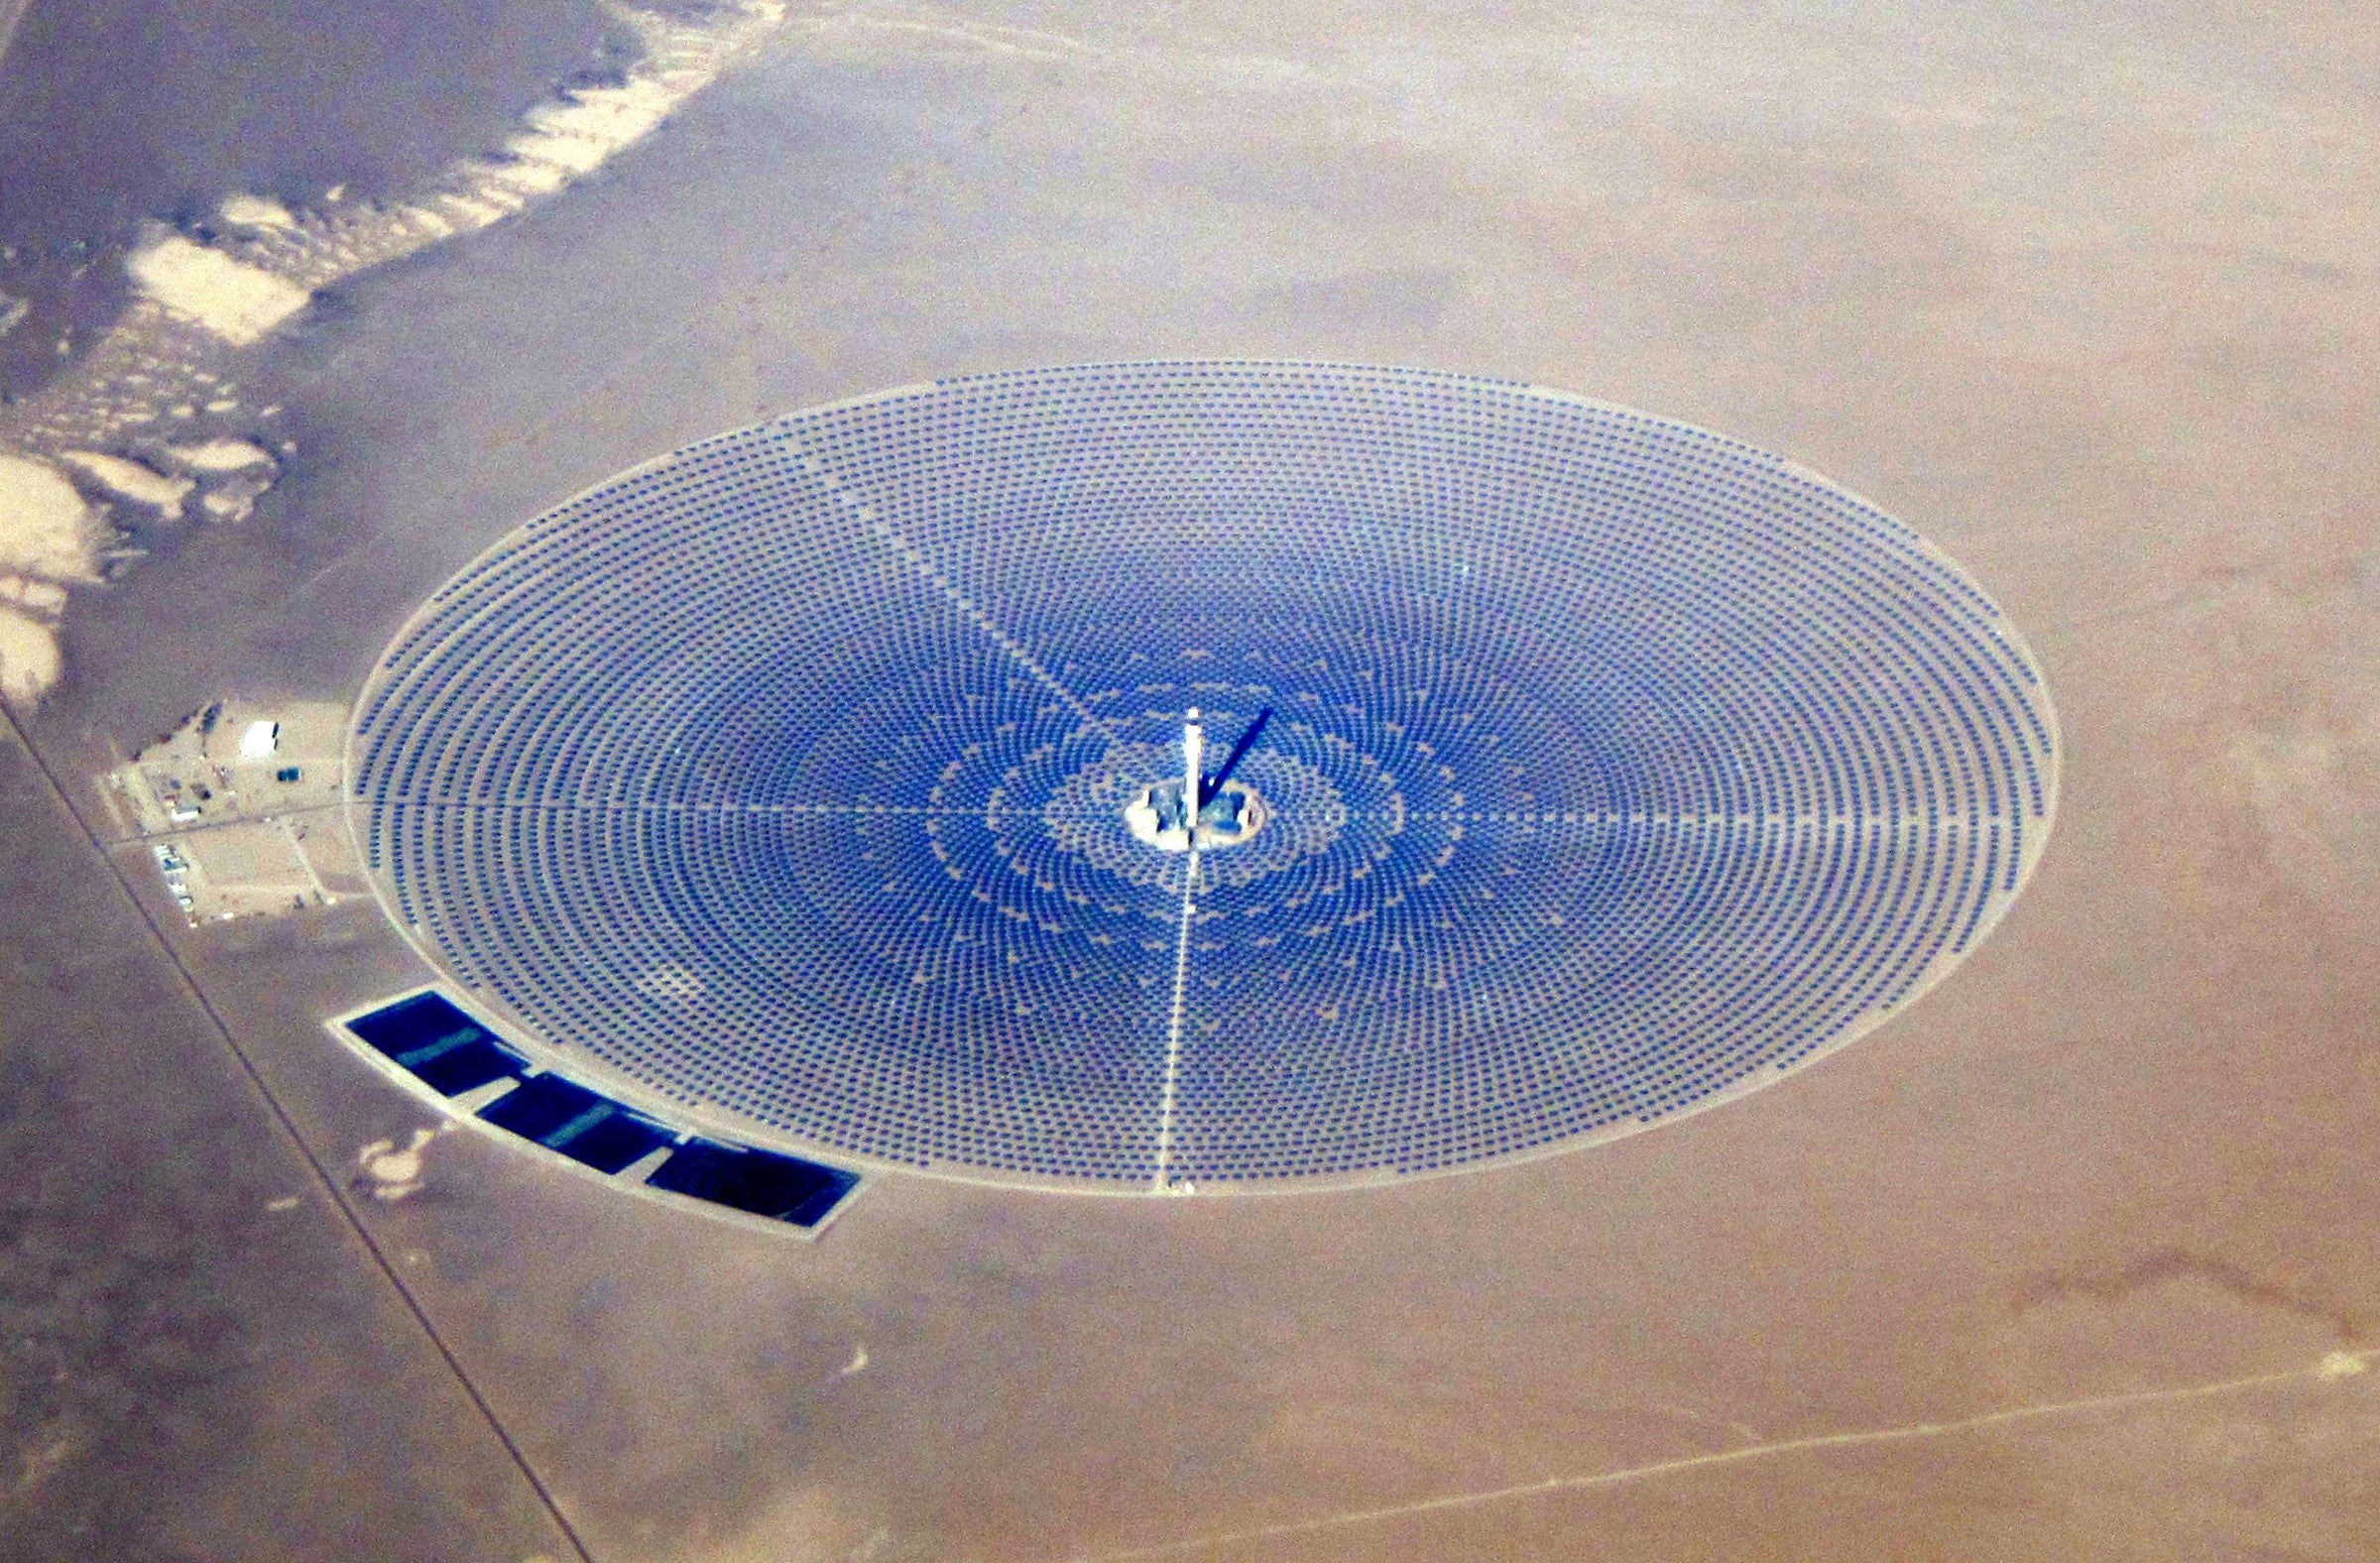 Solar Power Towers Are ‘Vaporizing’ Birds